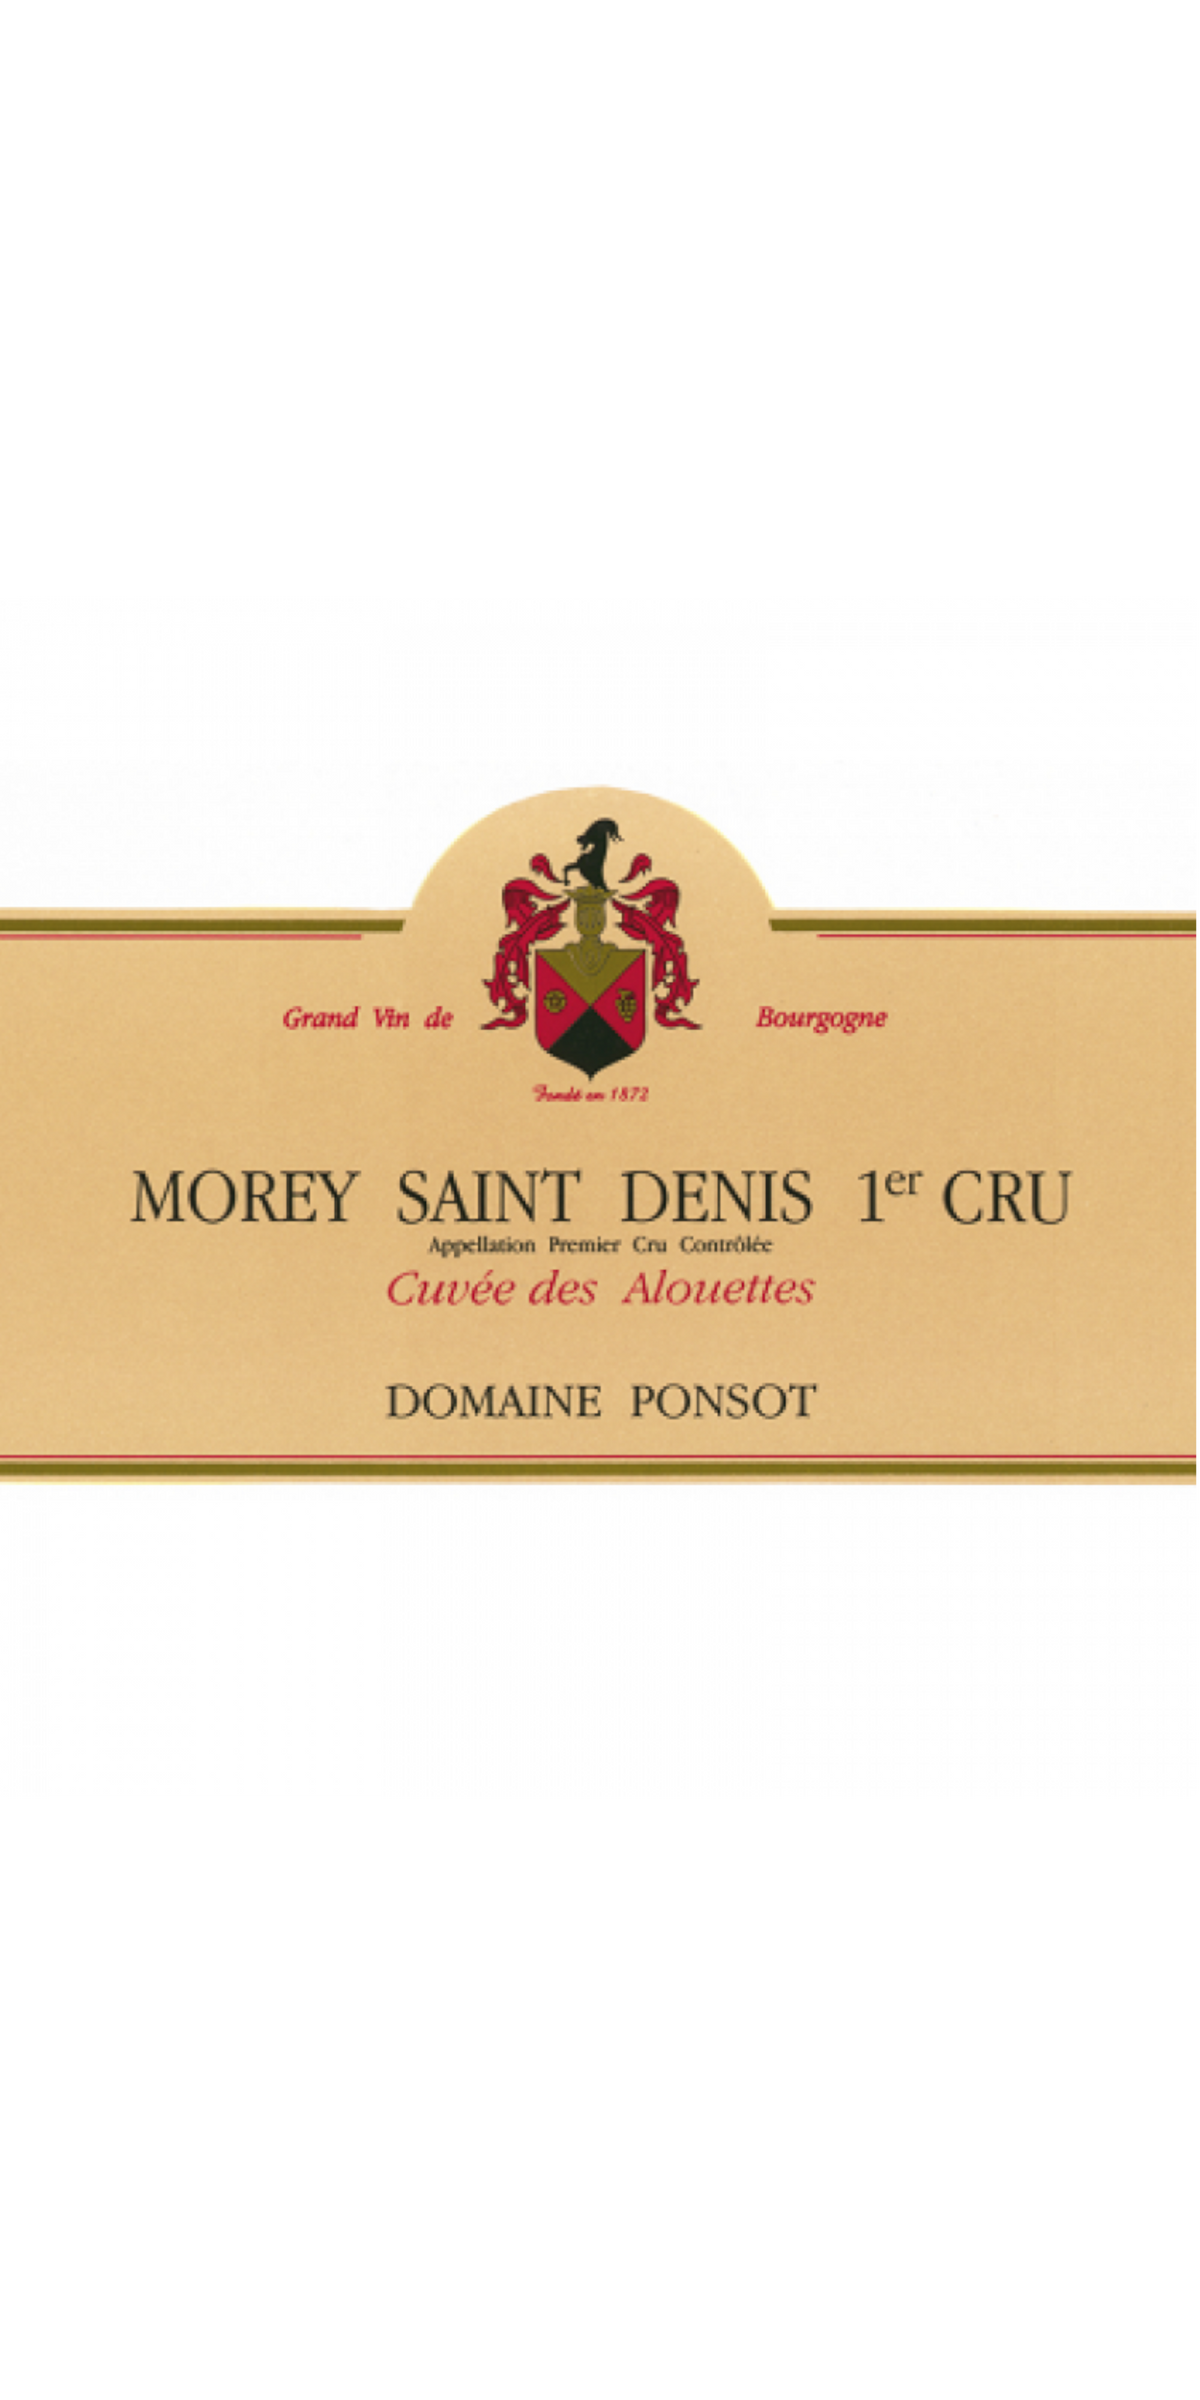 Domaine Ponsot Morey-Saint-Denis, Premier cru, Cuvee des Alouettes, Cote de Nuits, France 2016, 6x5cl, IB